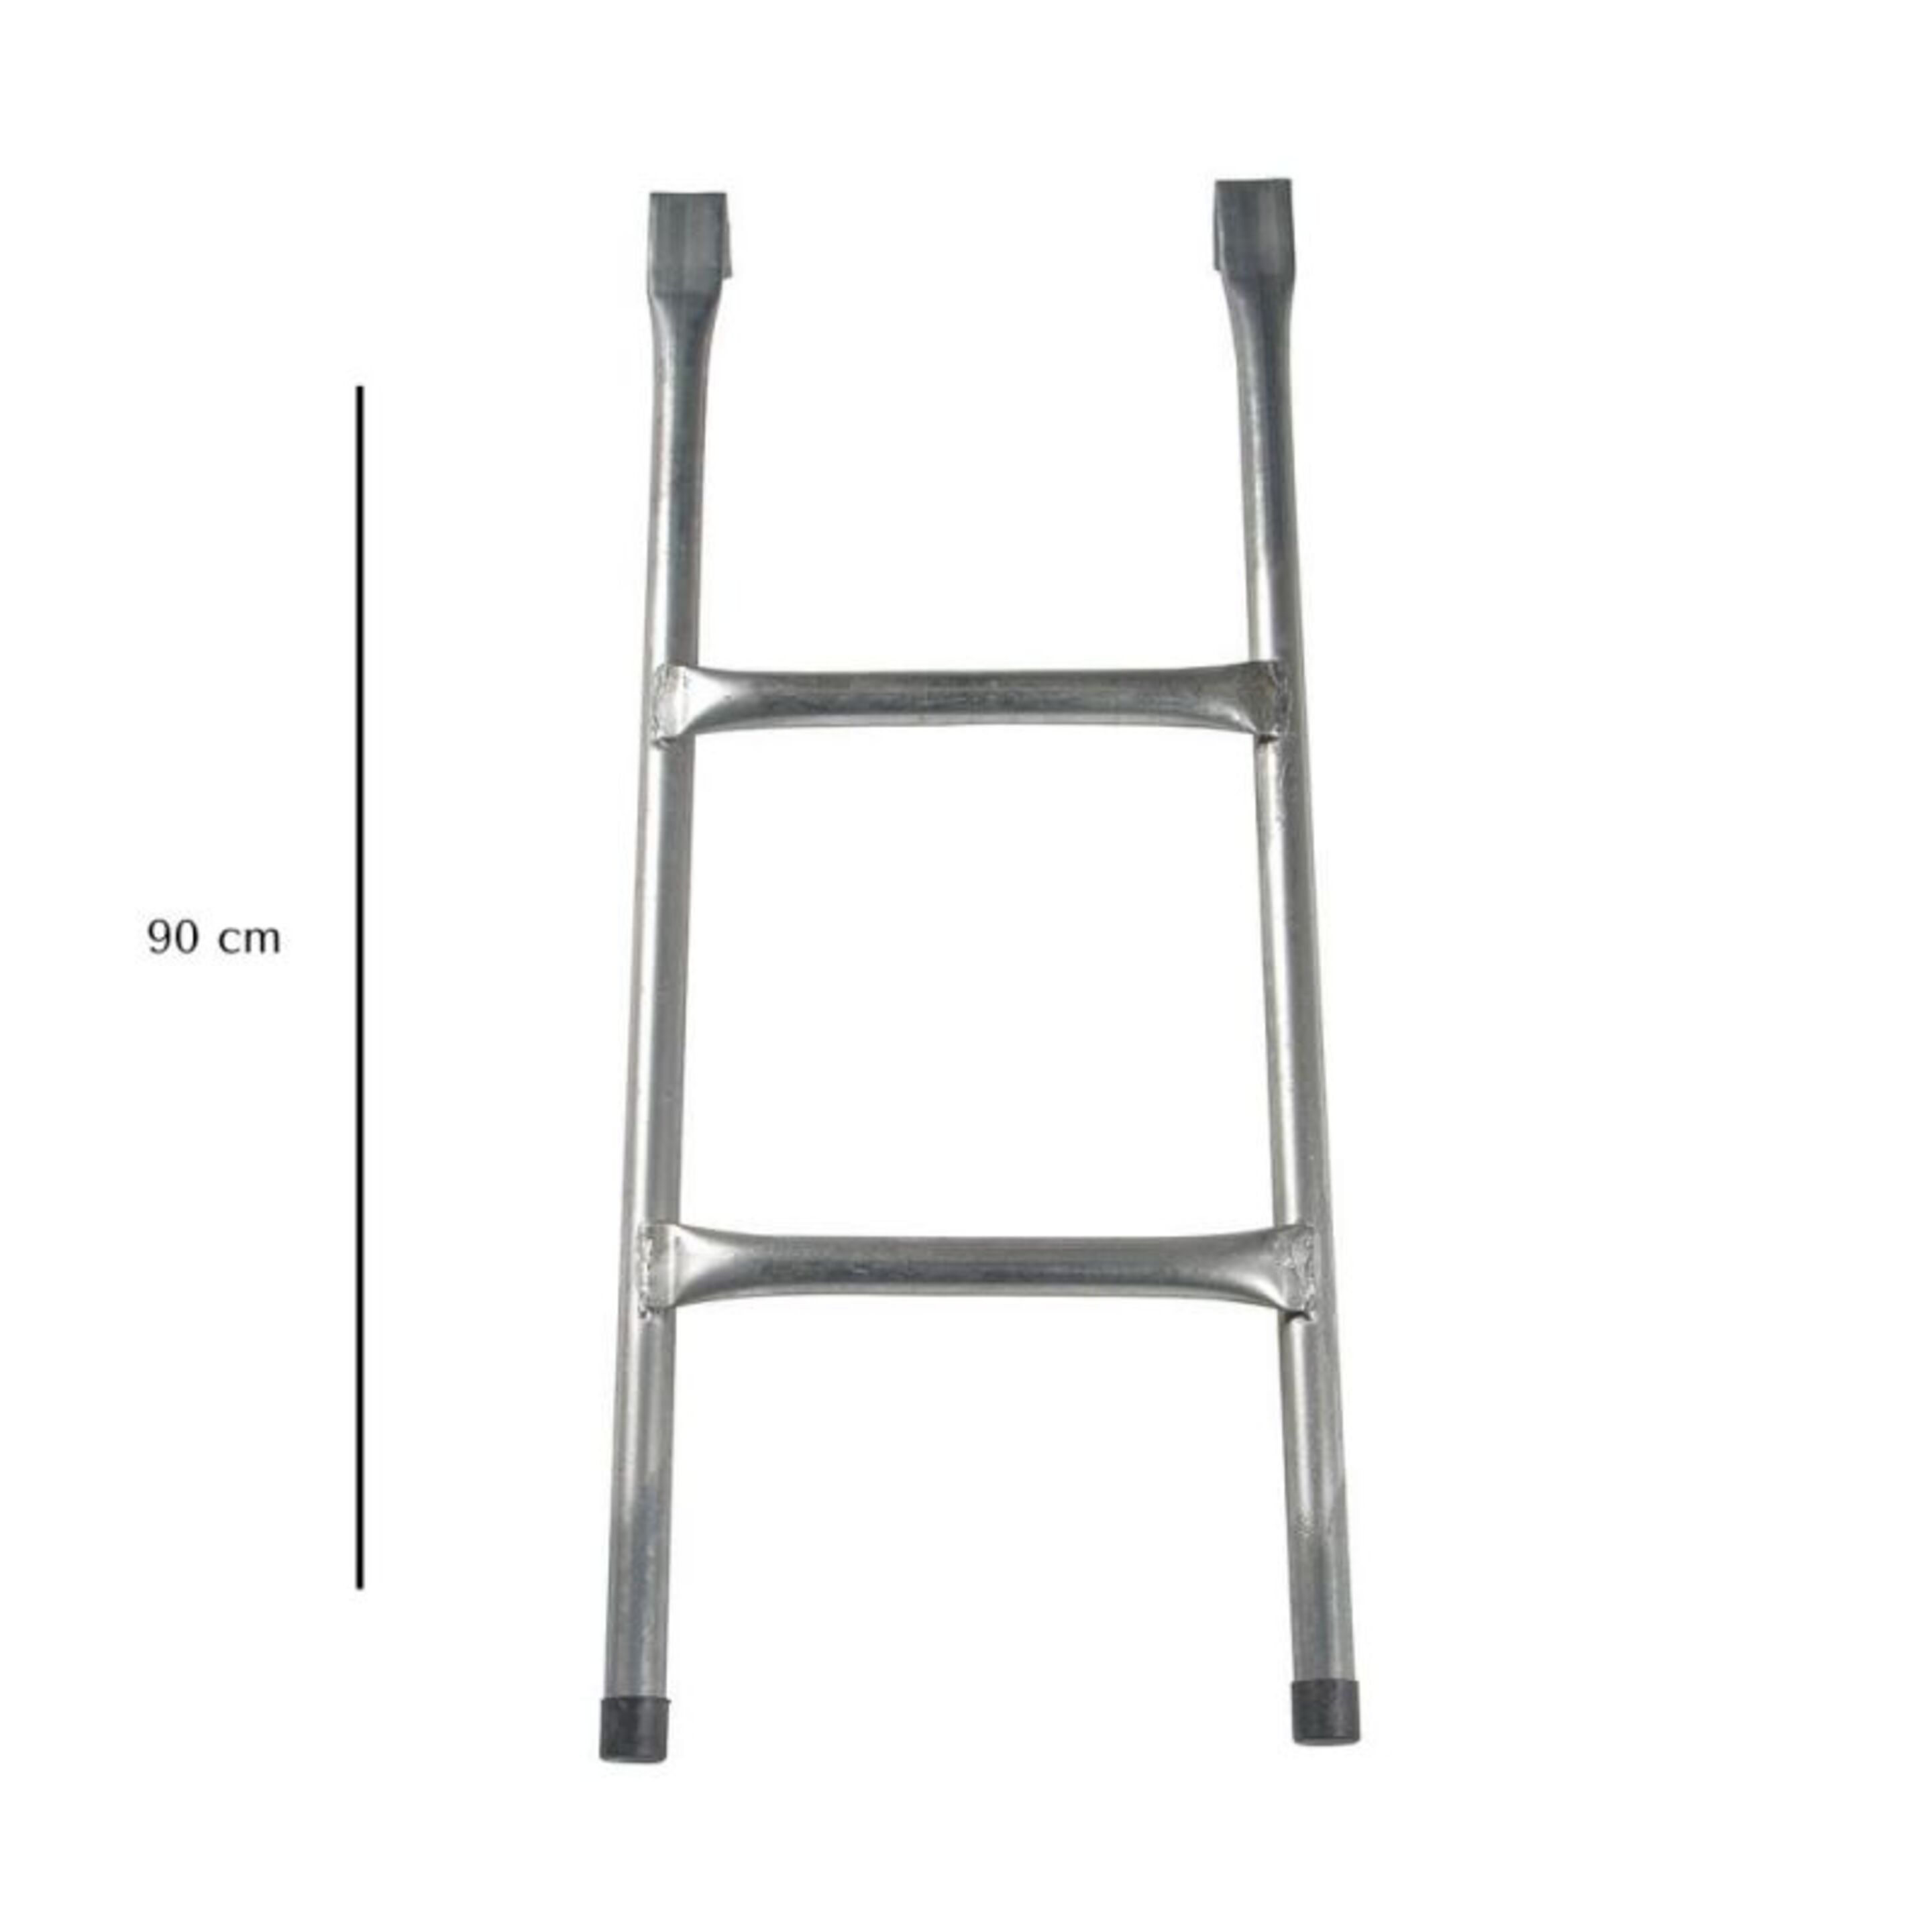 Escalera - Cama Elástica  - Universal 90 Cm - gris - 